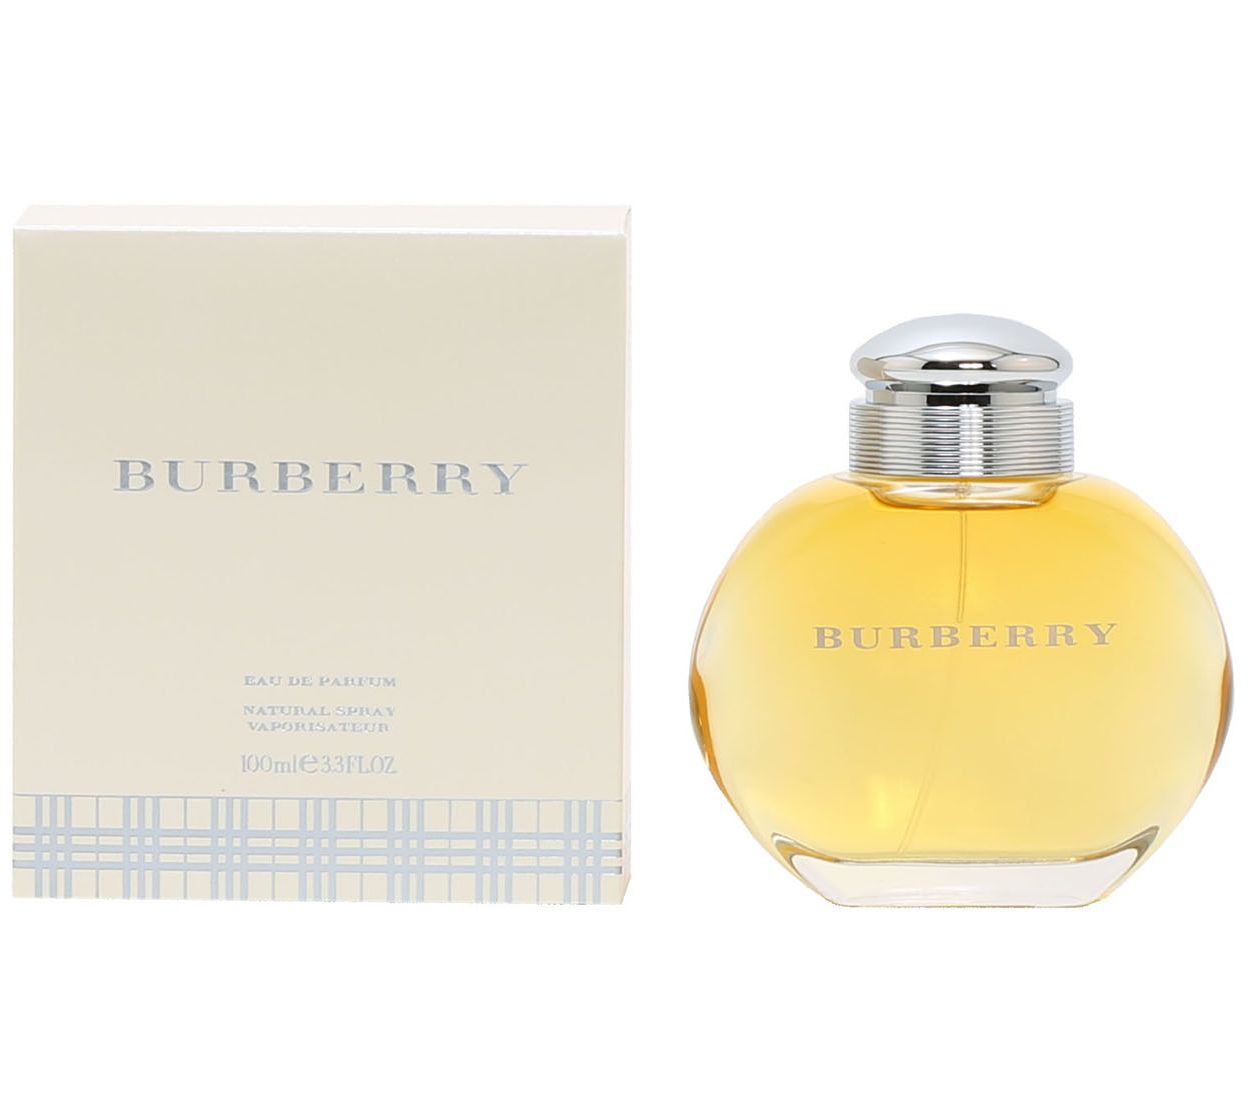  Burberry Women's Classic Eau de Parfum, 3.3 Fl Oz